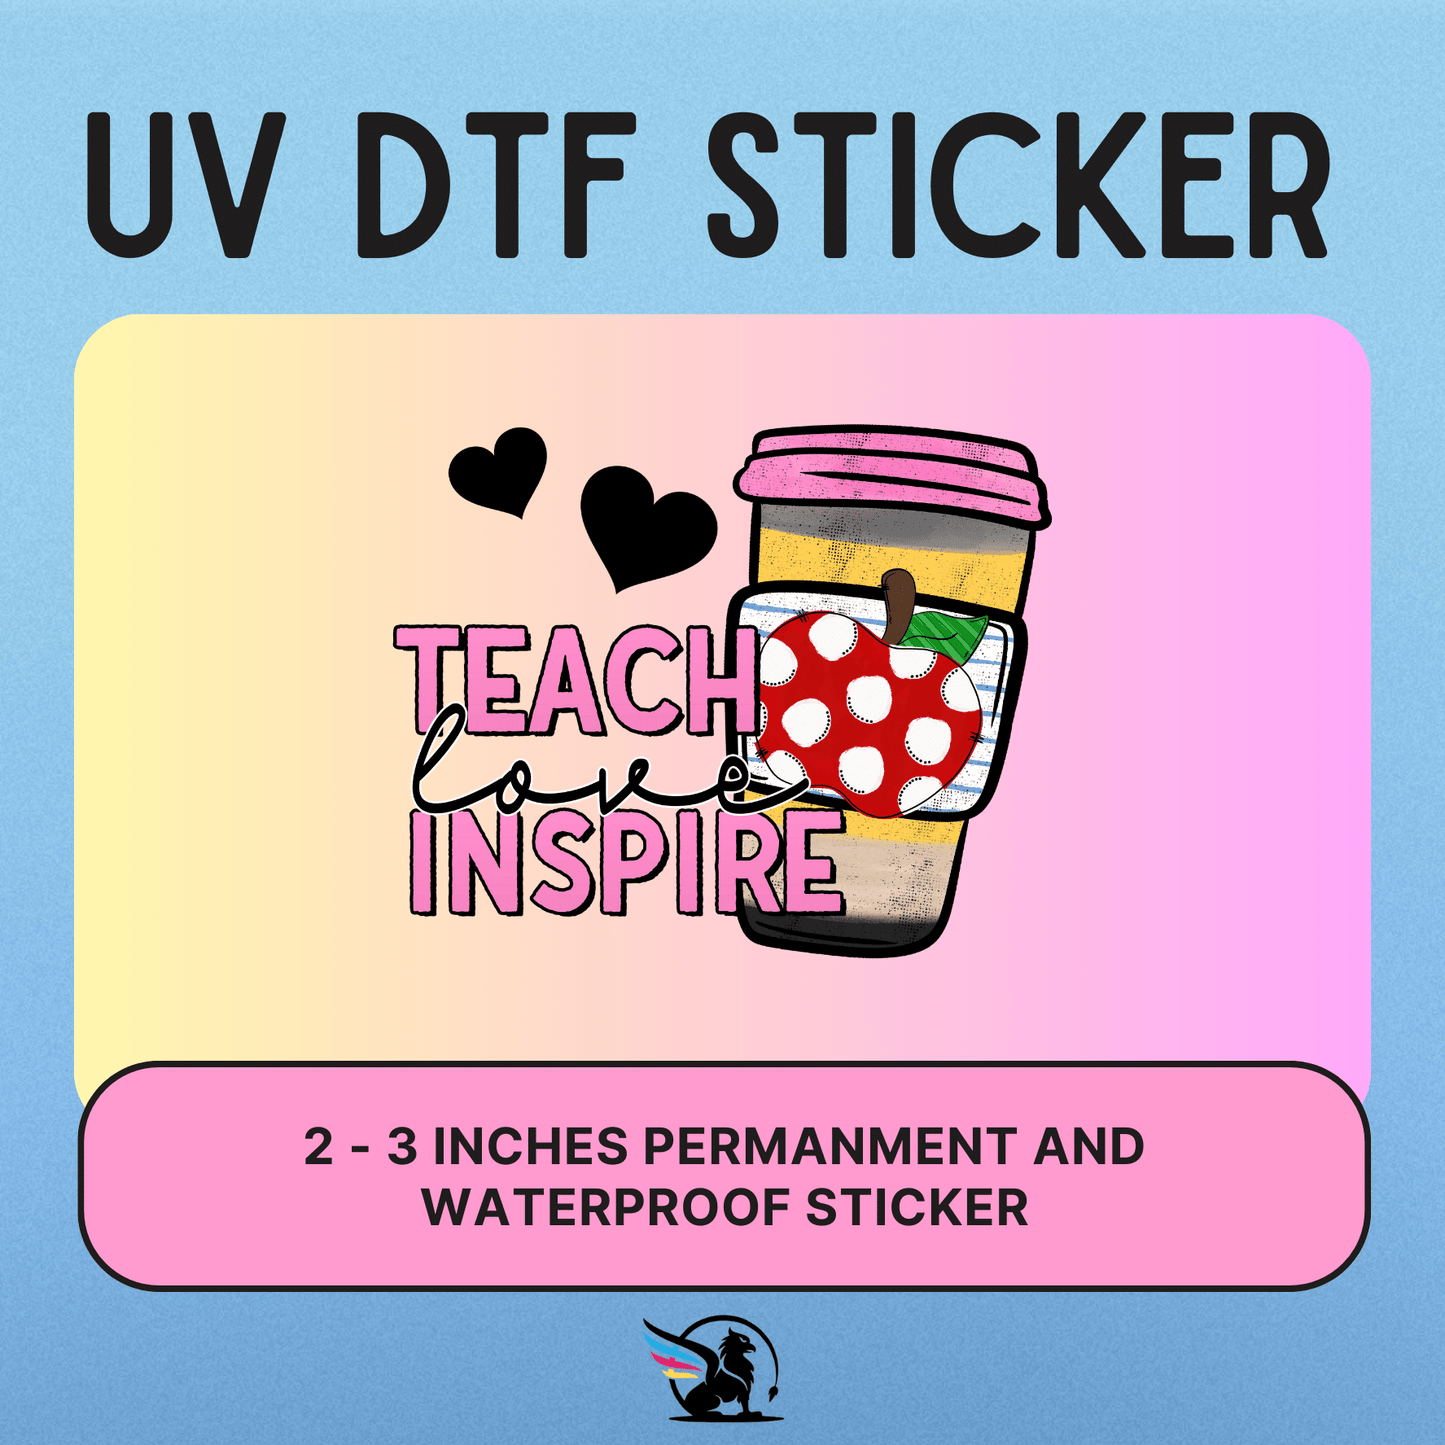 Teach Love Inspire | UV DTF STICKER